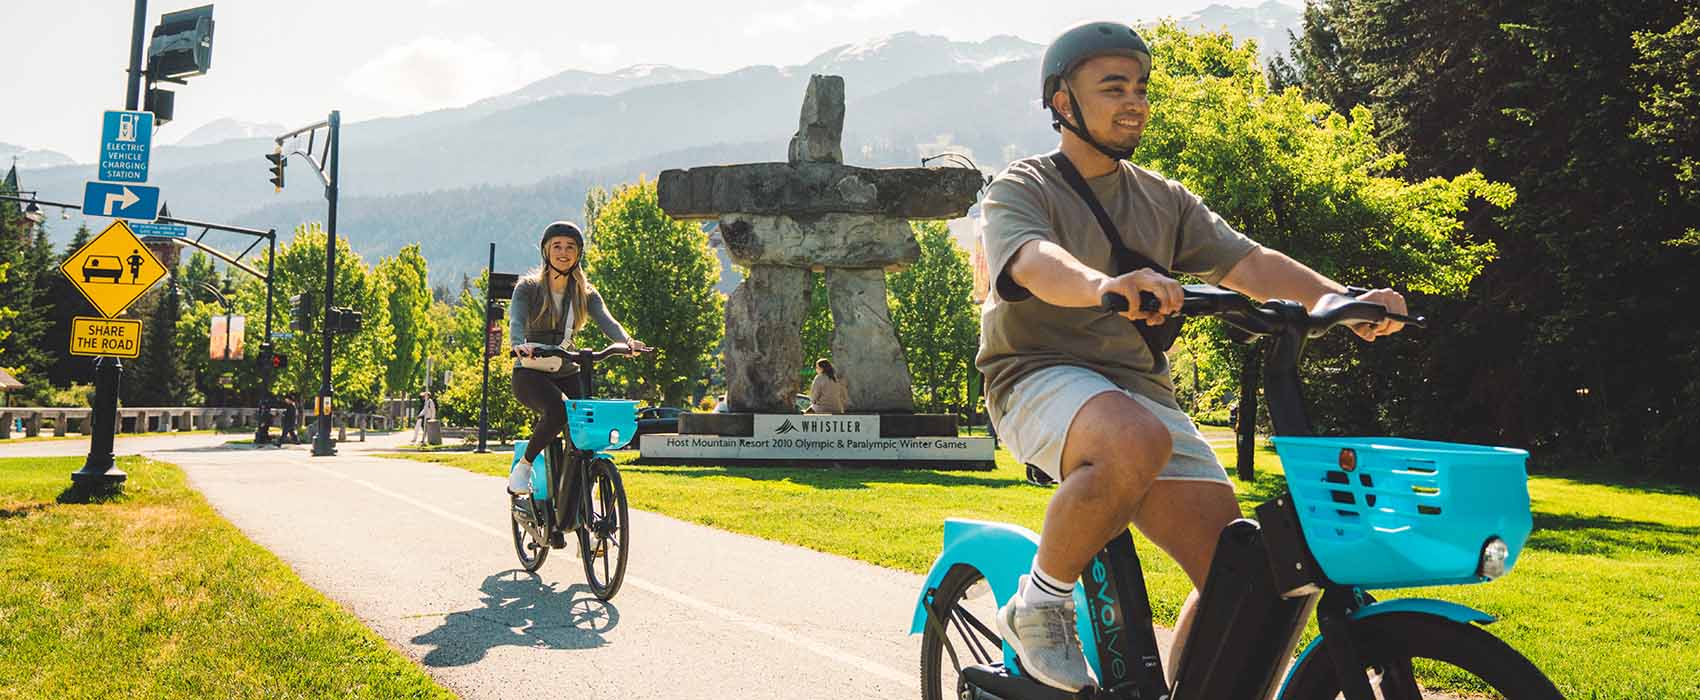 Evolve e-bikes being ridden through Whistler